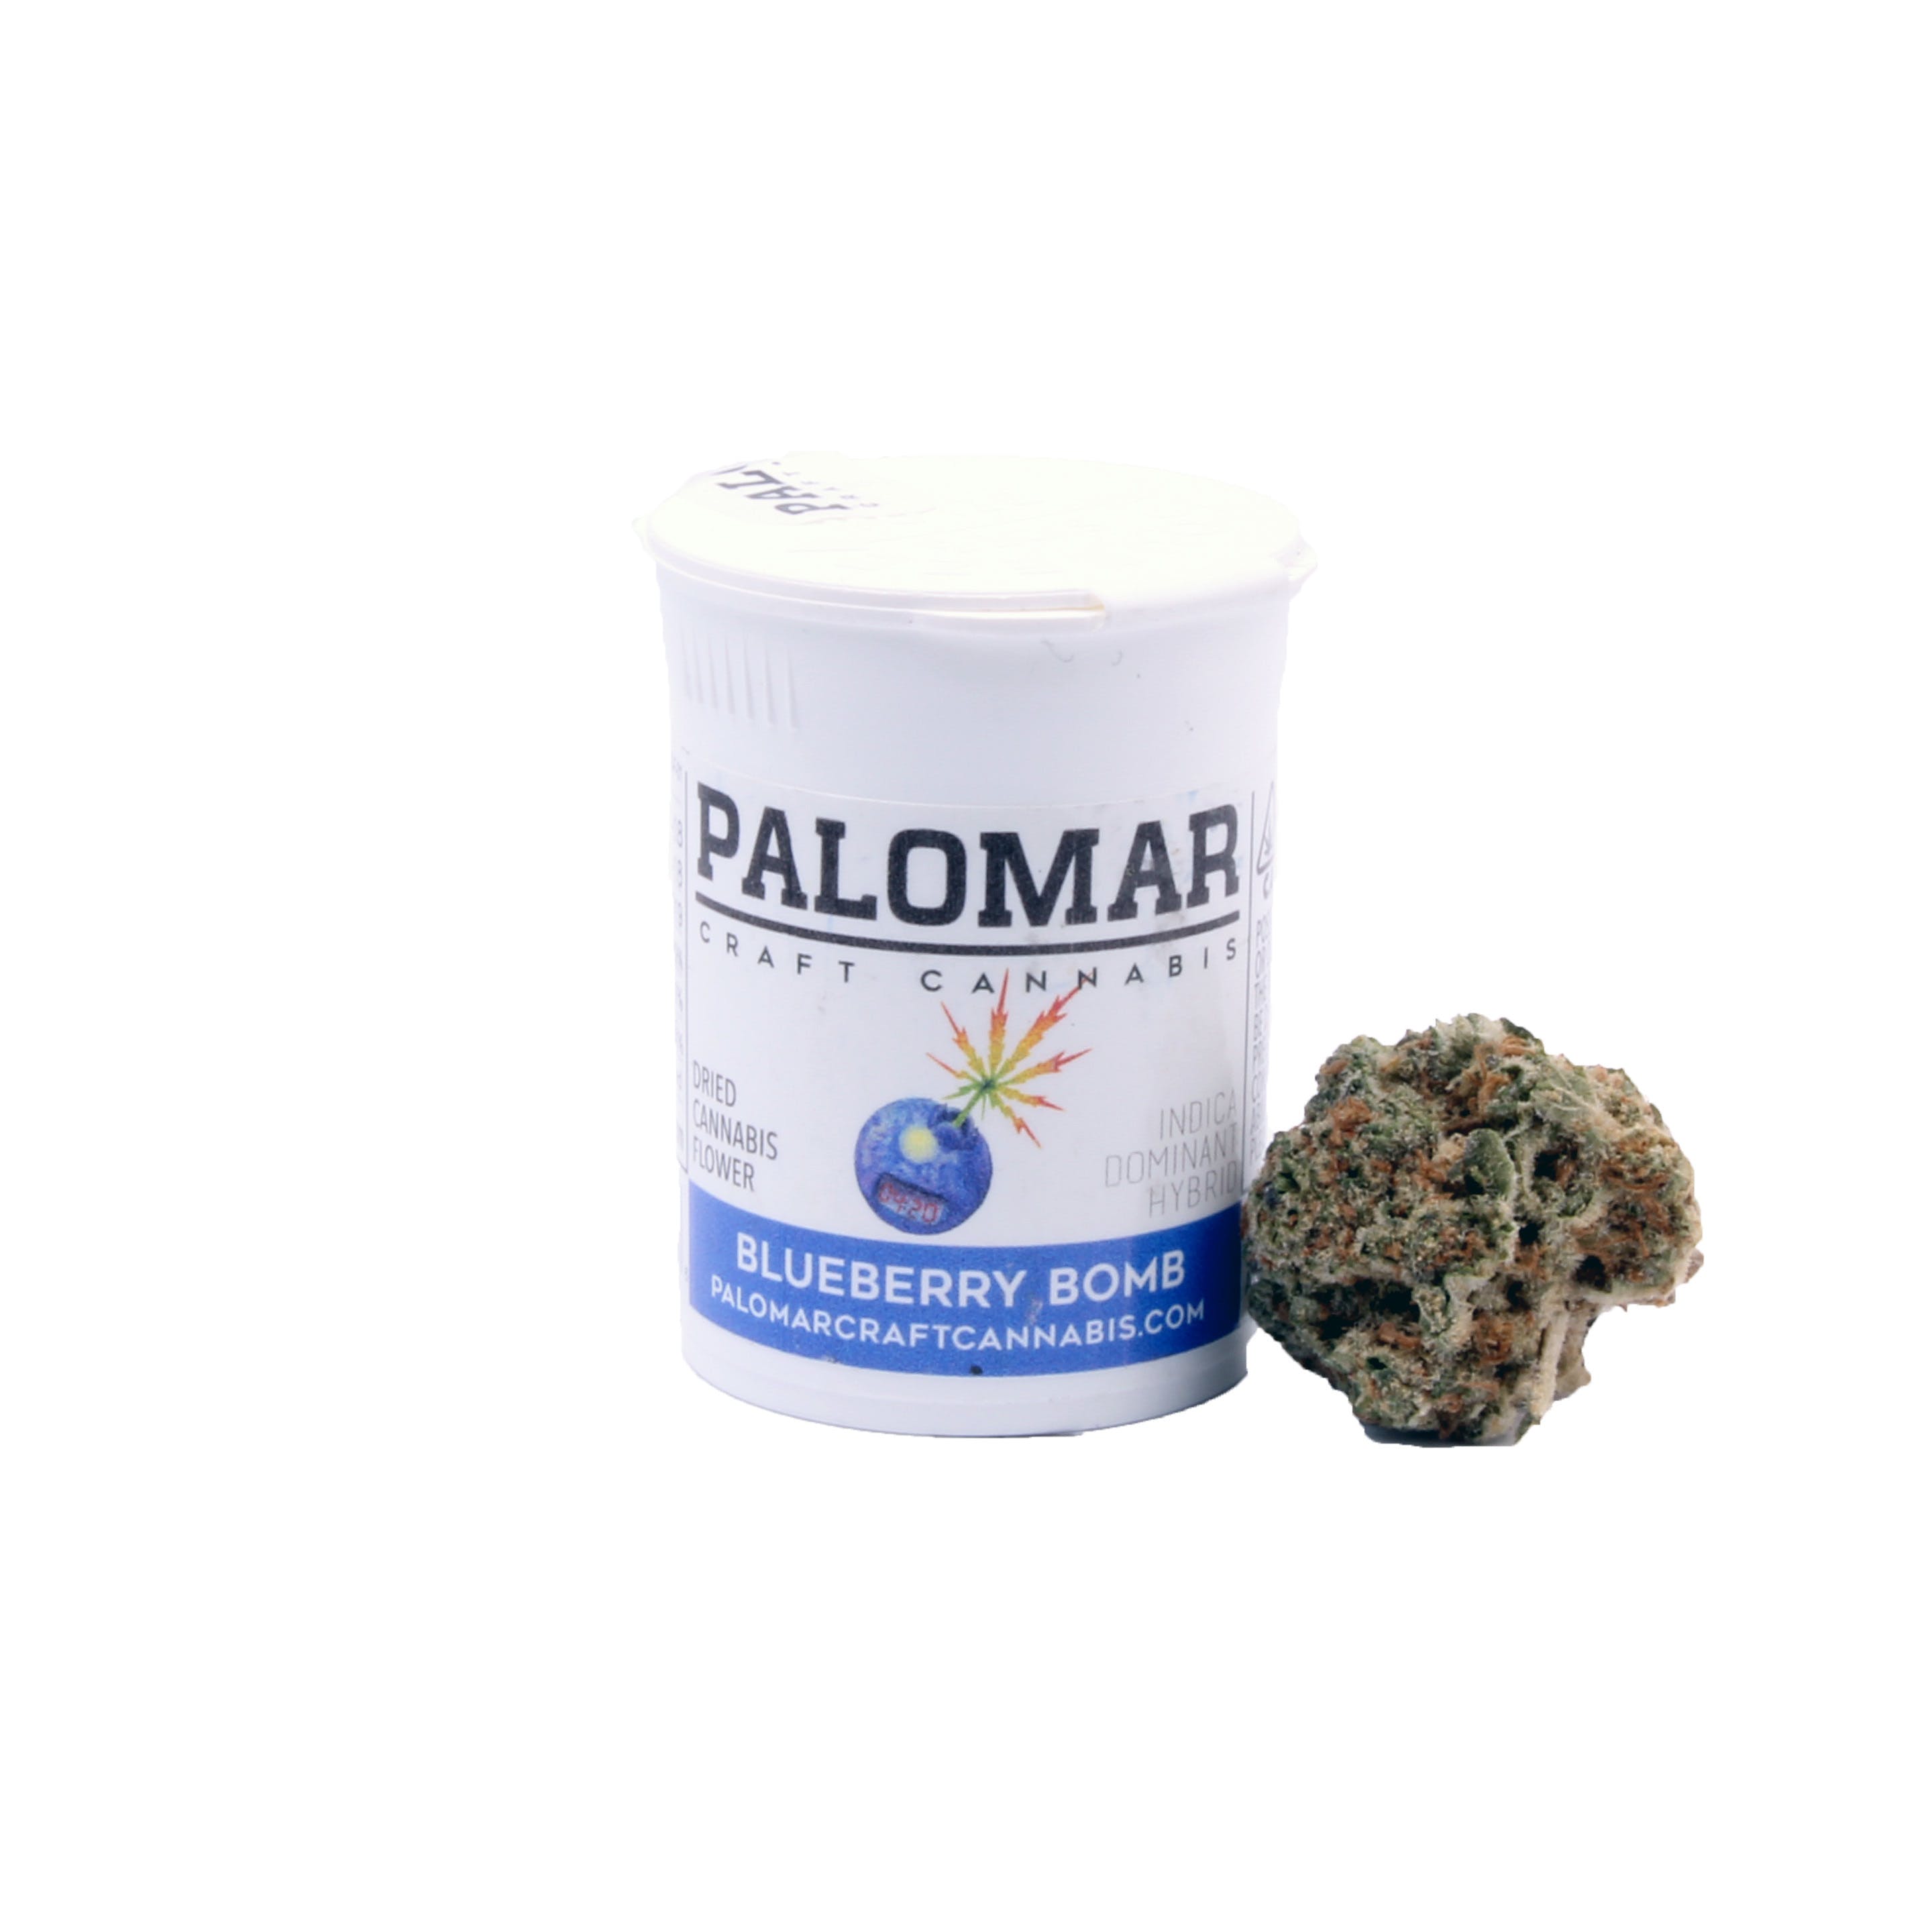 Palomar Craft Cannabis: Blueberry Bomb - 17.9%THC / 0.12%CBD